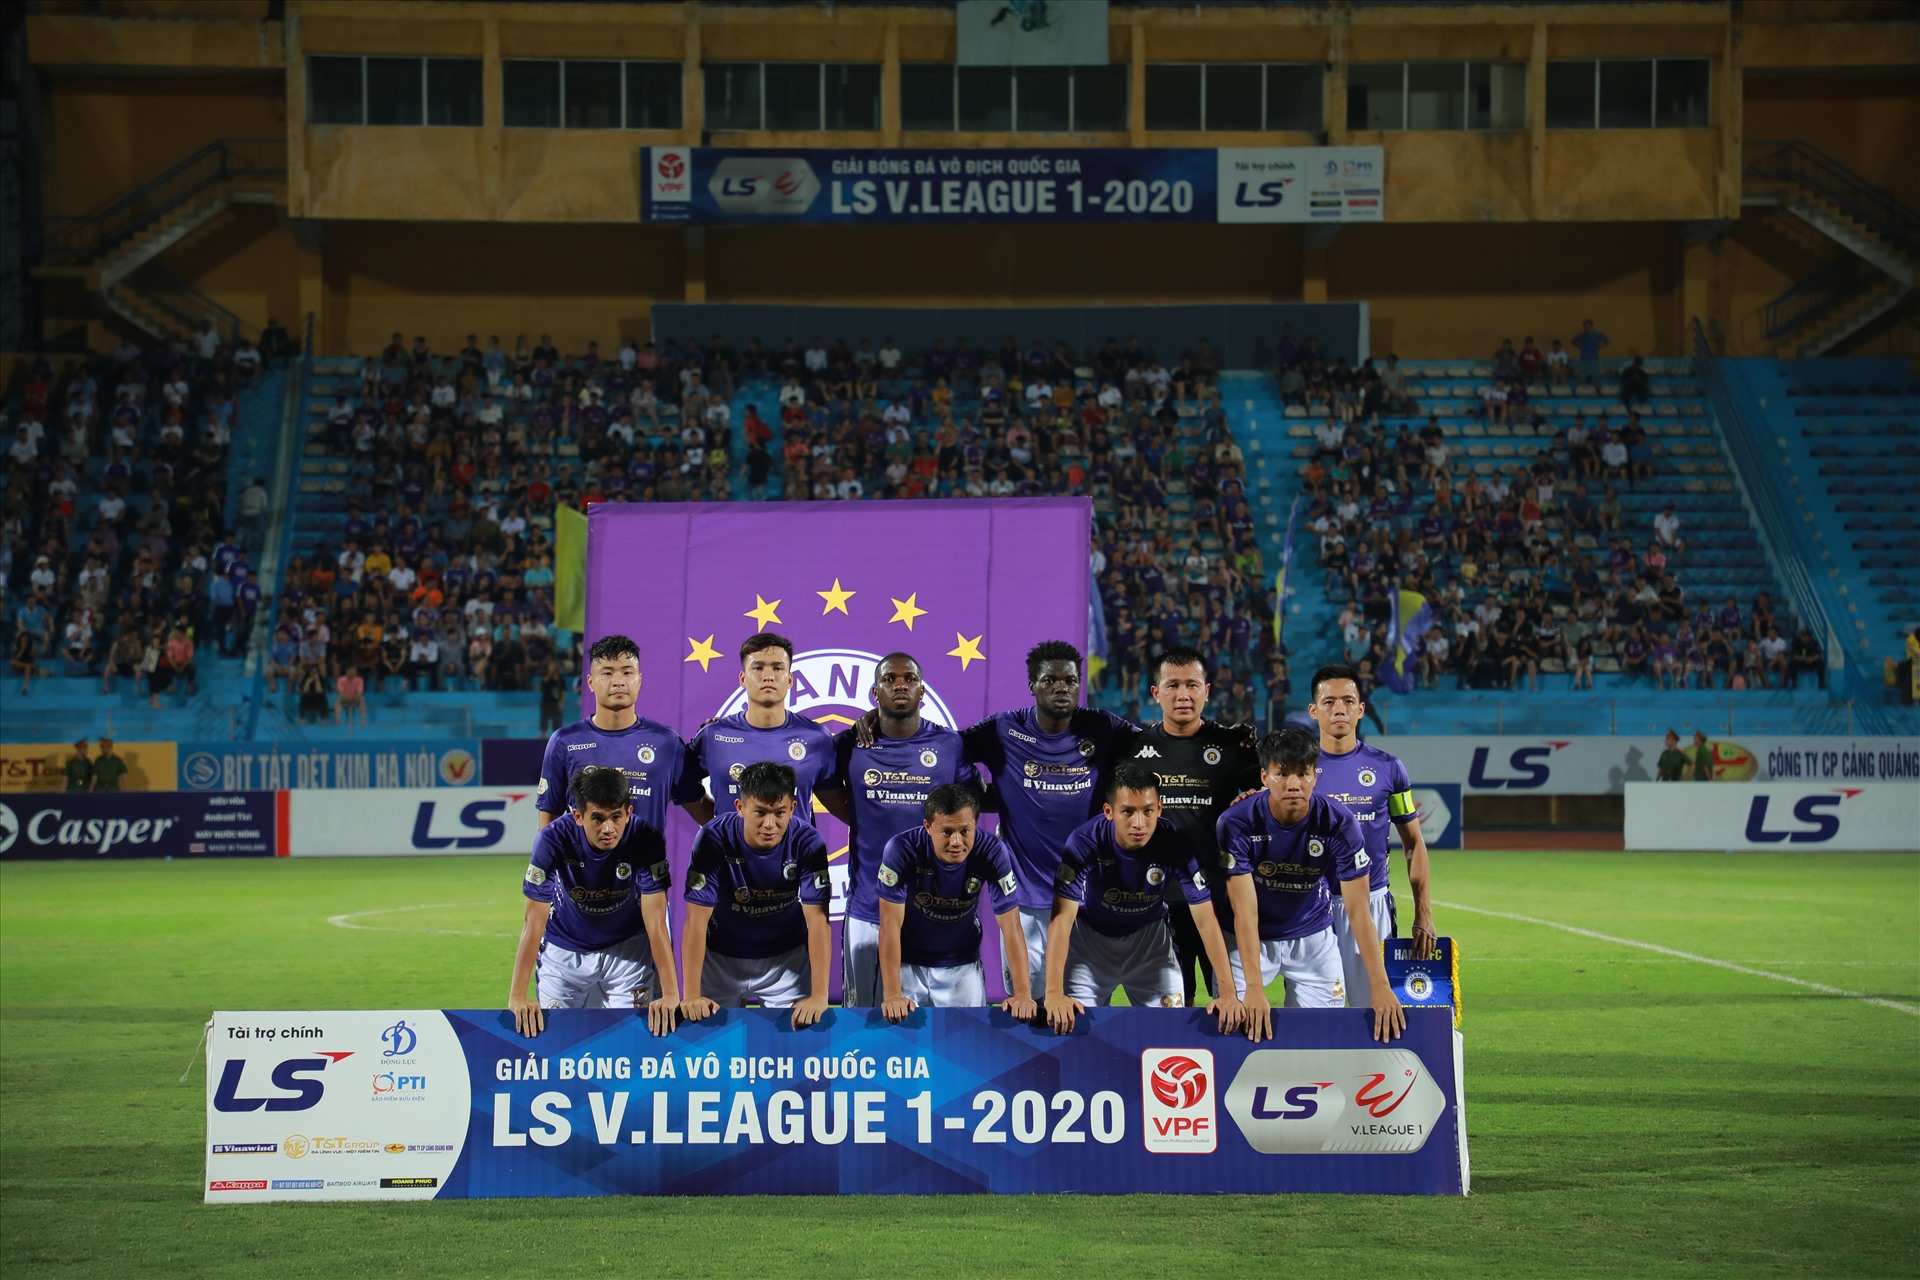 Sau 7 vòng đấu của V.League 2020, Hà Nội FC đã thua tới 3 trận và đang trượt dần xuống nửa dưới của bảng xếp hạng. Đội bóng của huấn luyện viên Chu Đình Nghiêm gặp vấn đề nghiêm trọng về lực lượng, đặc biệt là ở hàng thủ.